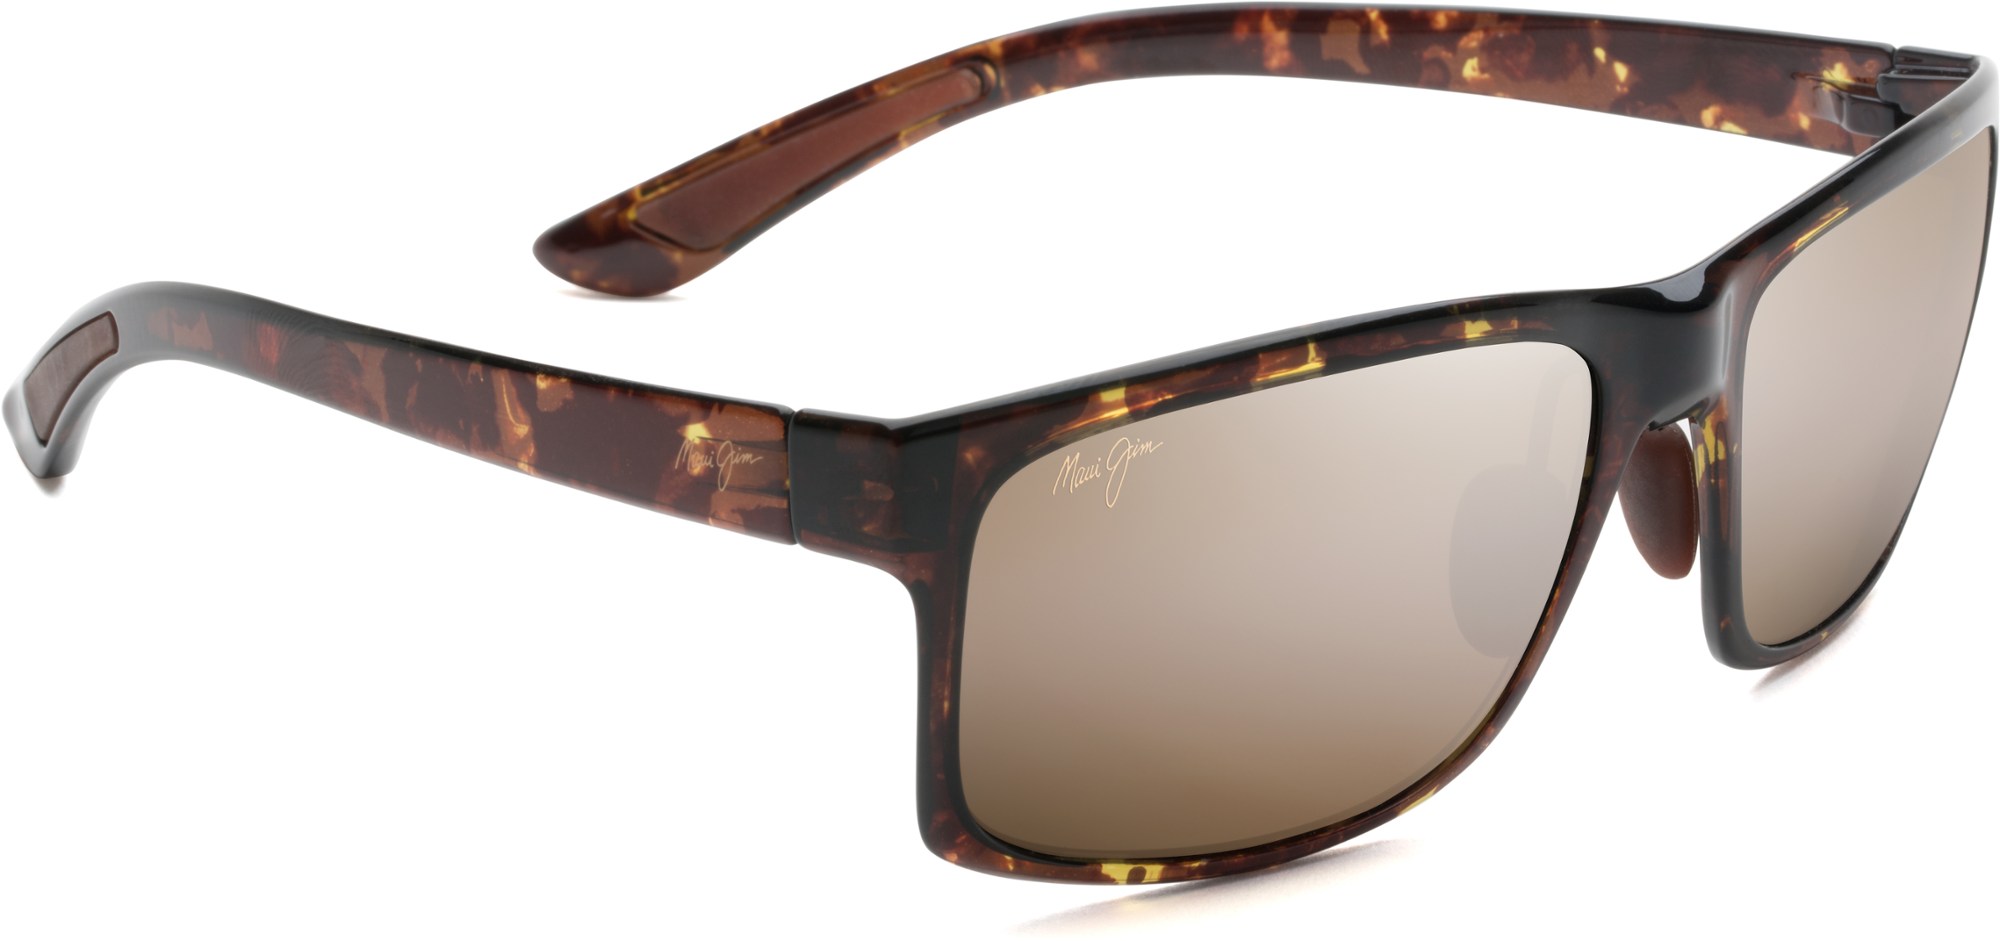 цена Поляризованные солнцезащитные очки Pokowai Arch Maui Jim, зеленый